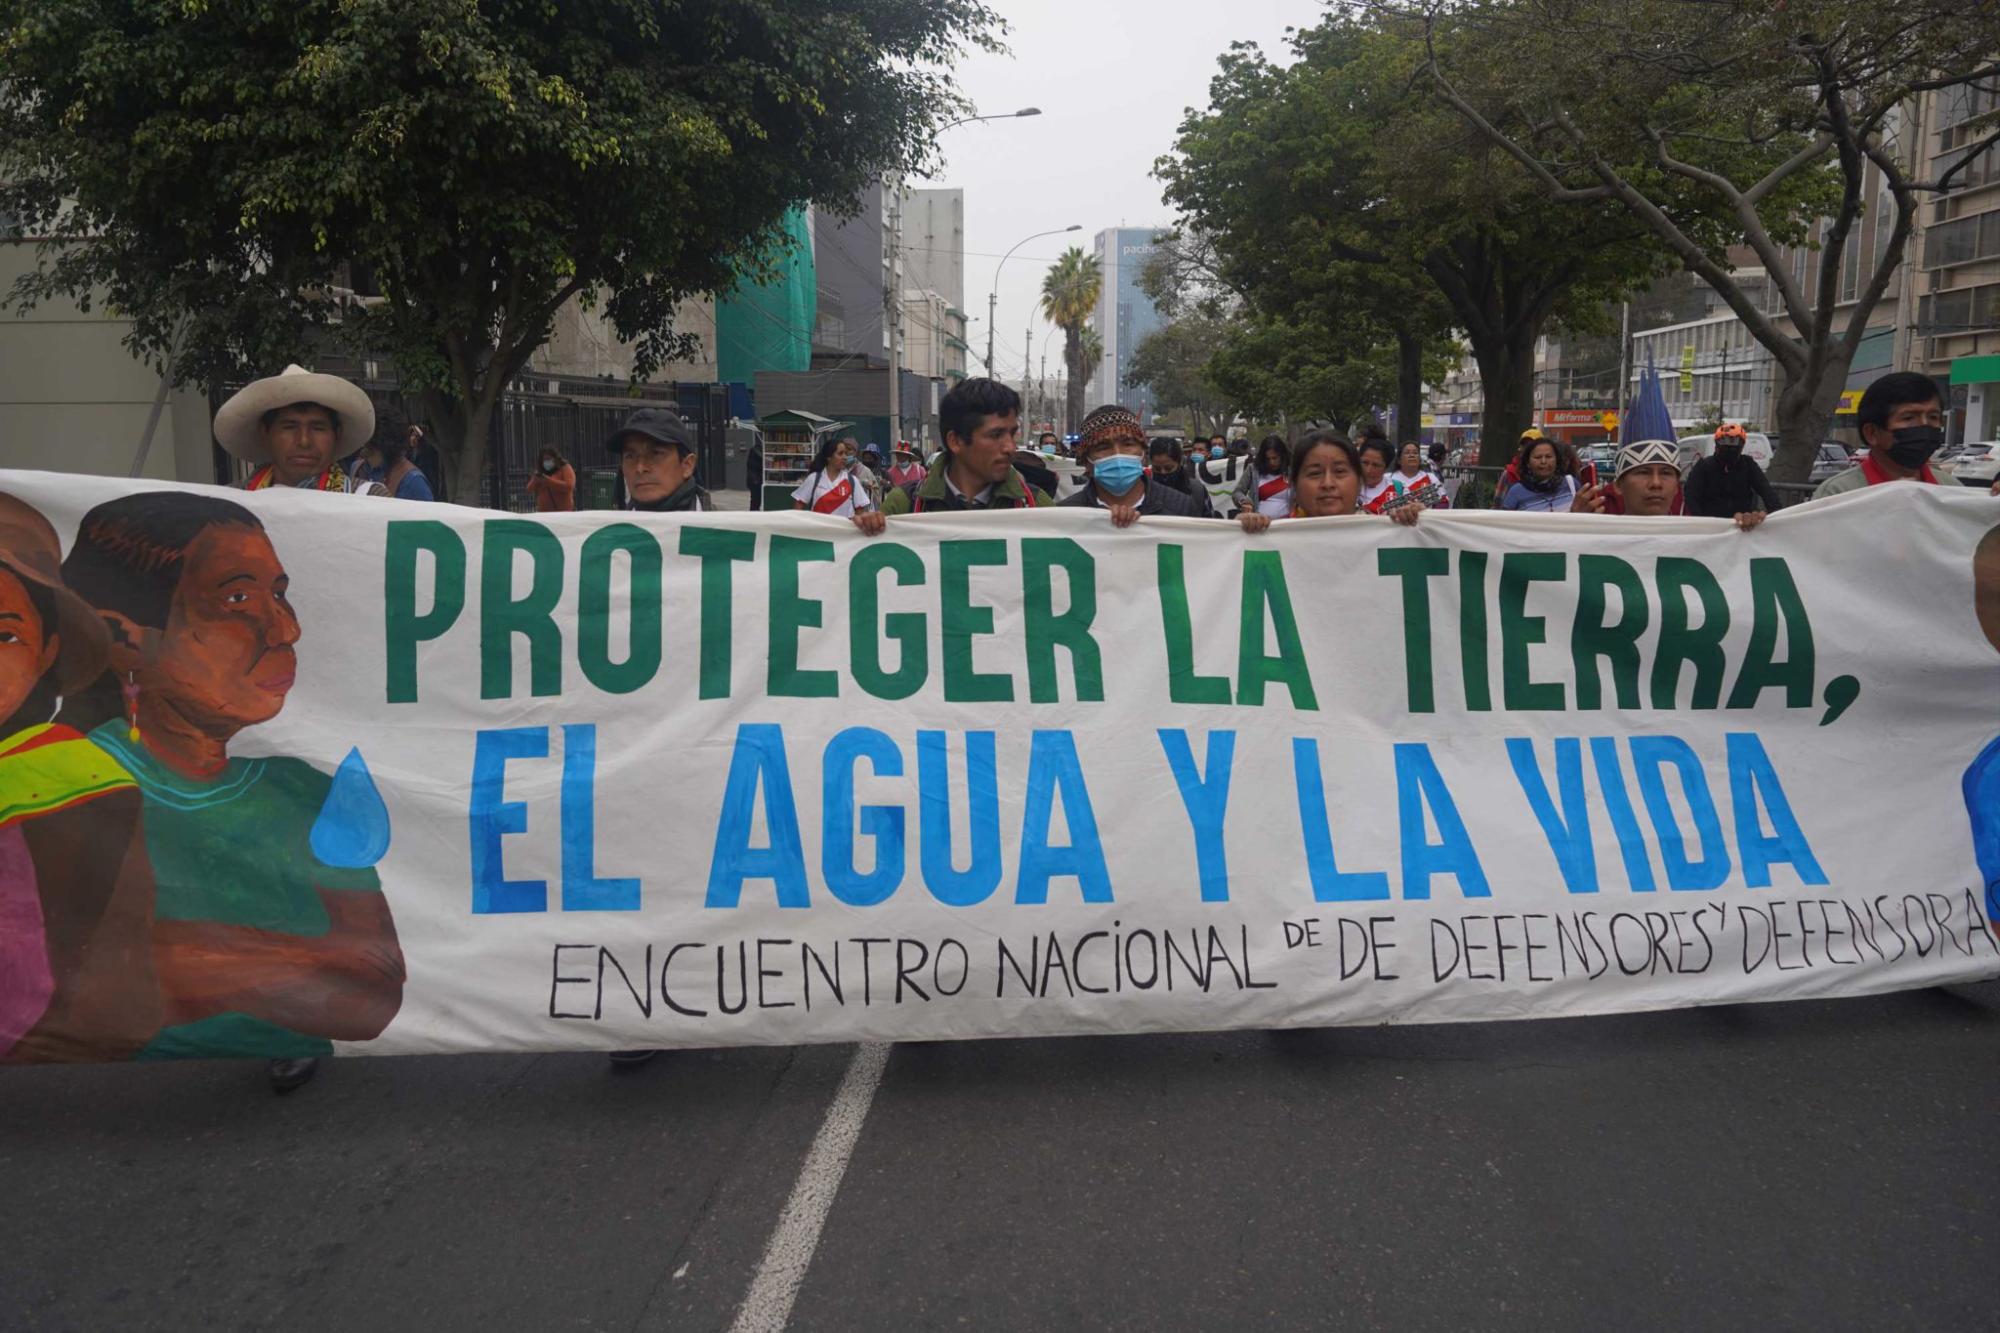 $!Marcha para exigir acciones frente a los ataques de defensores ambientales realizada en Lima, Perú.